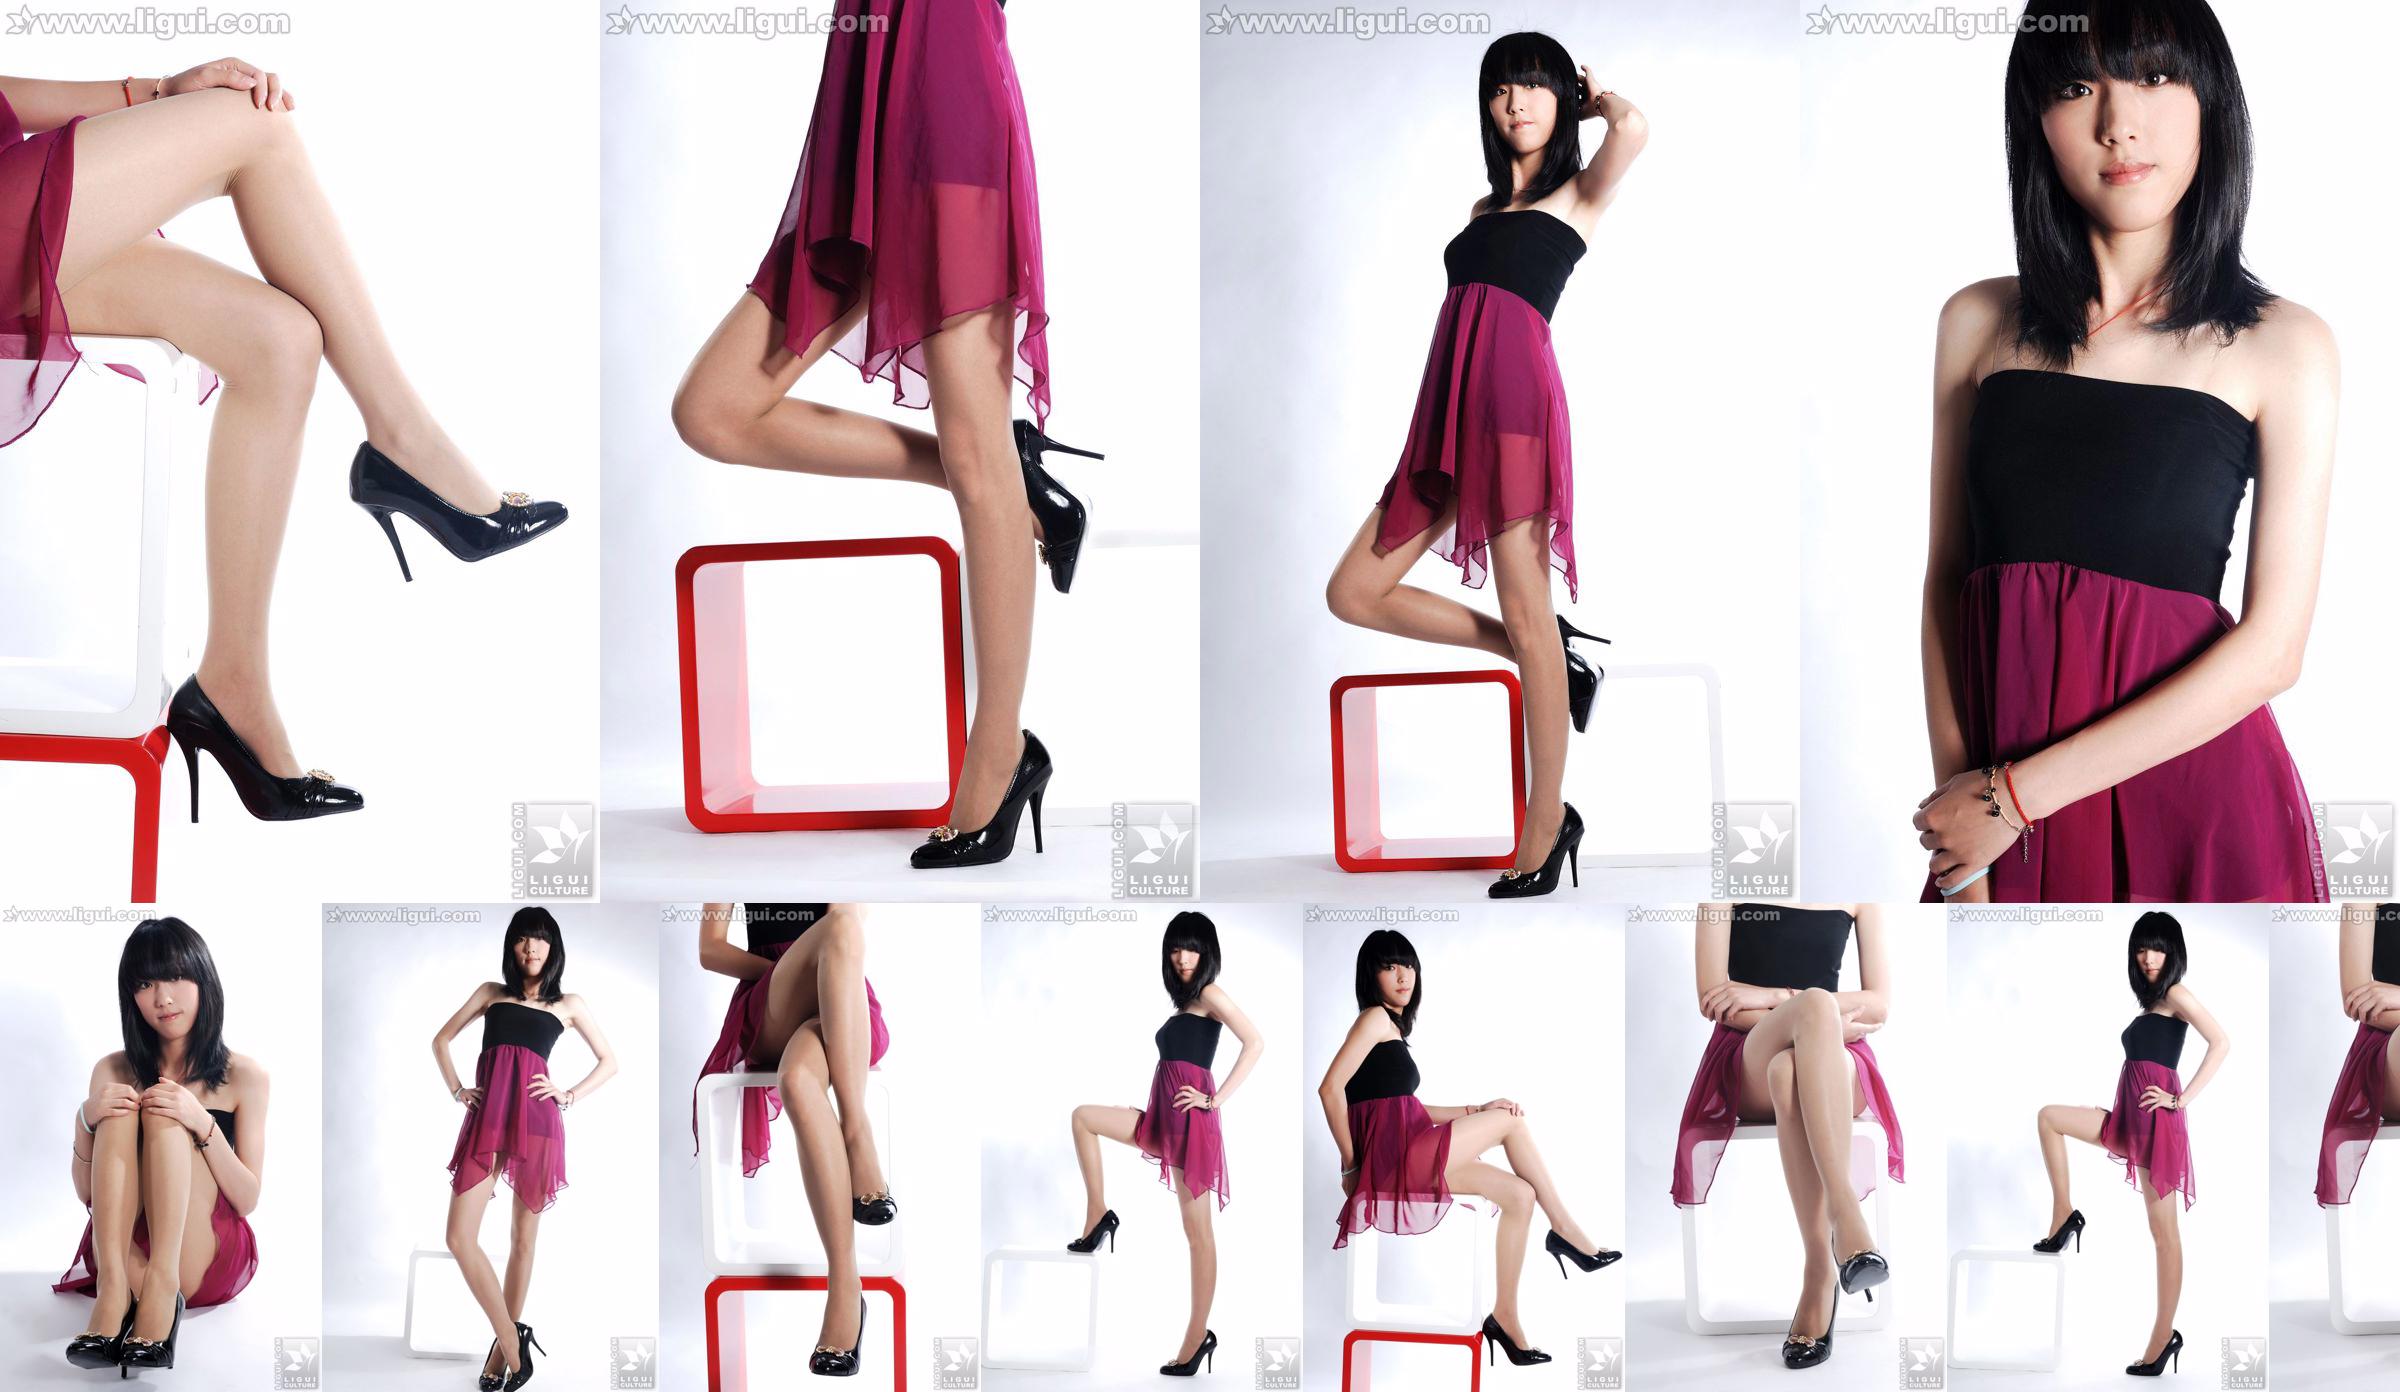 นางแบบ Lu Yingmei "Top Visual High-heeled Blockbuster" [丽柜 LiGui] ภาพถ่ายขาสวยและเท้าหยก No.e5d54c หน้า 1